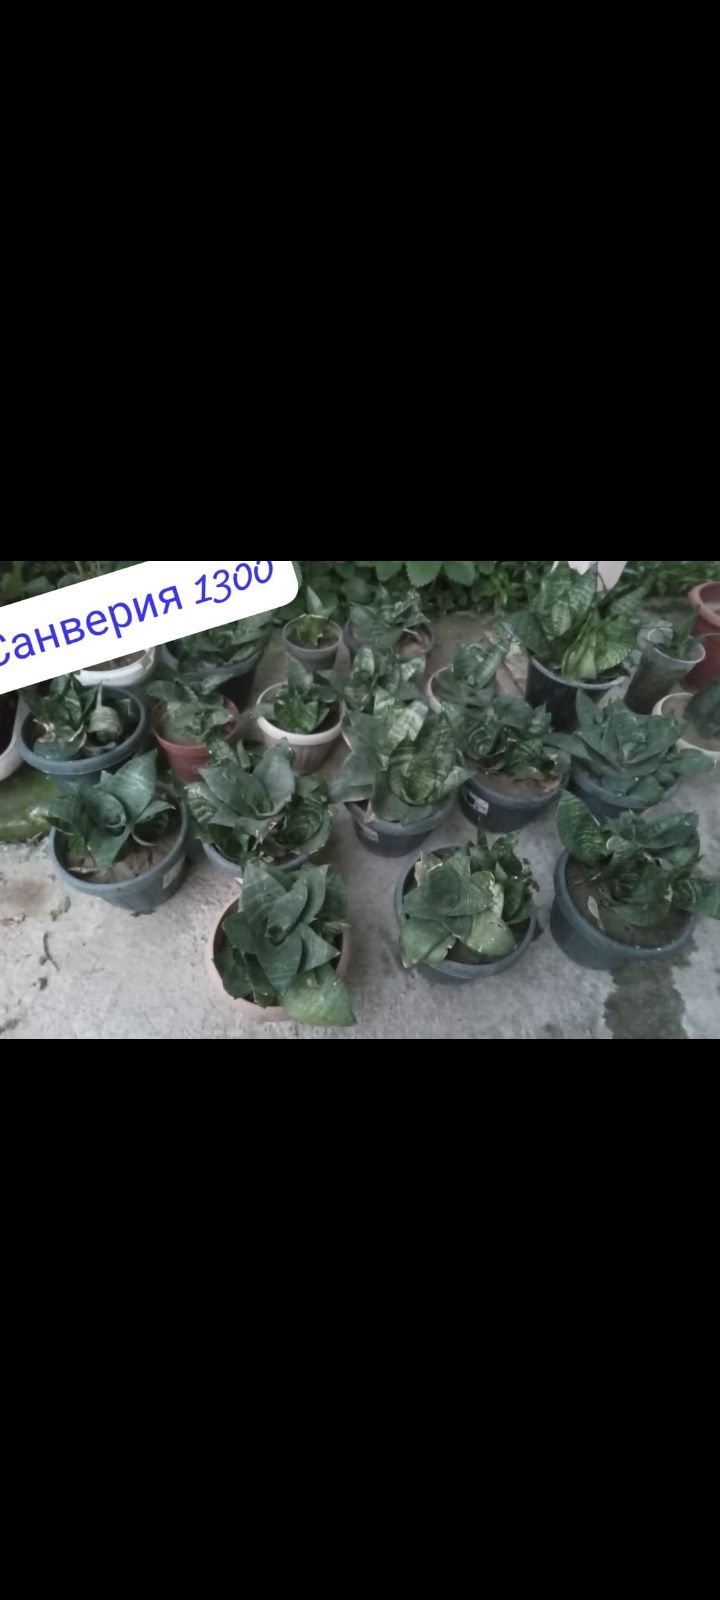 Продаю комнатные растения